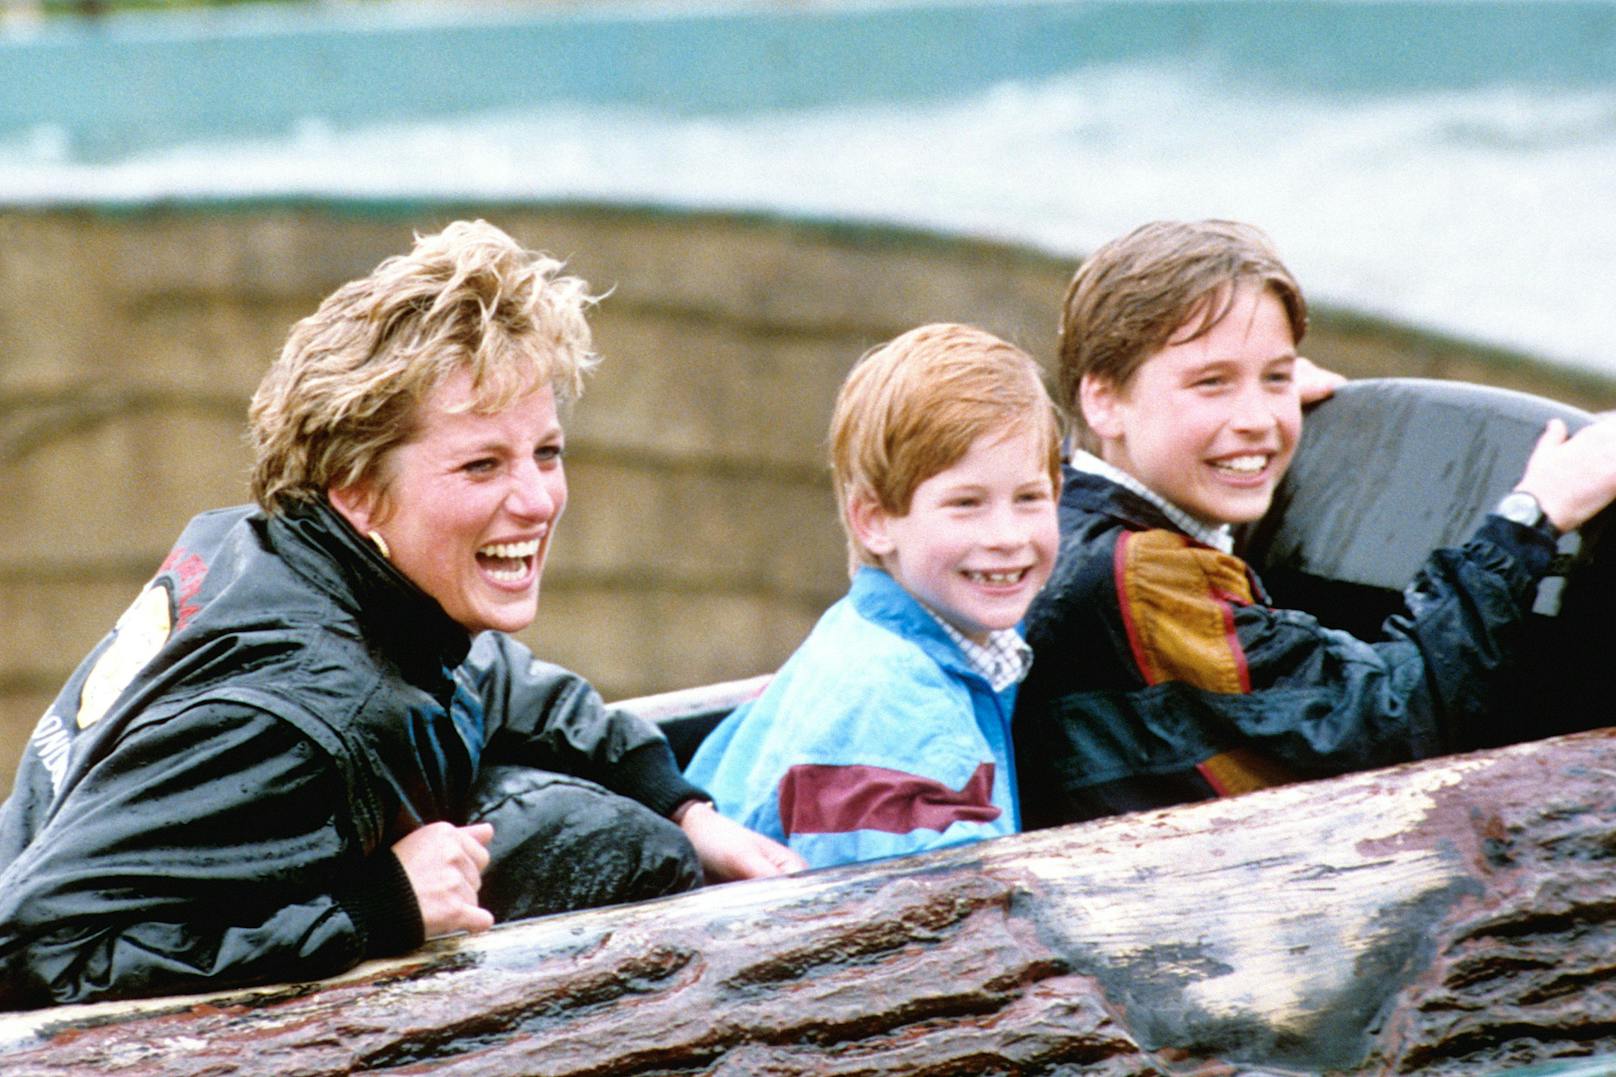 Da war die Welt noch in Ordnung! Diana mit ihren Söhnen in einem Freizeitpark.